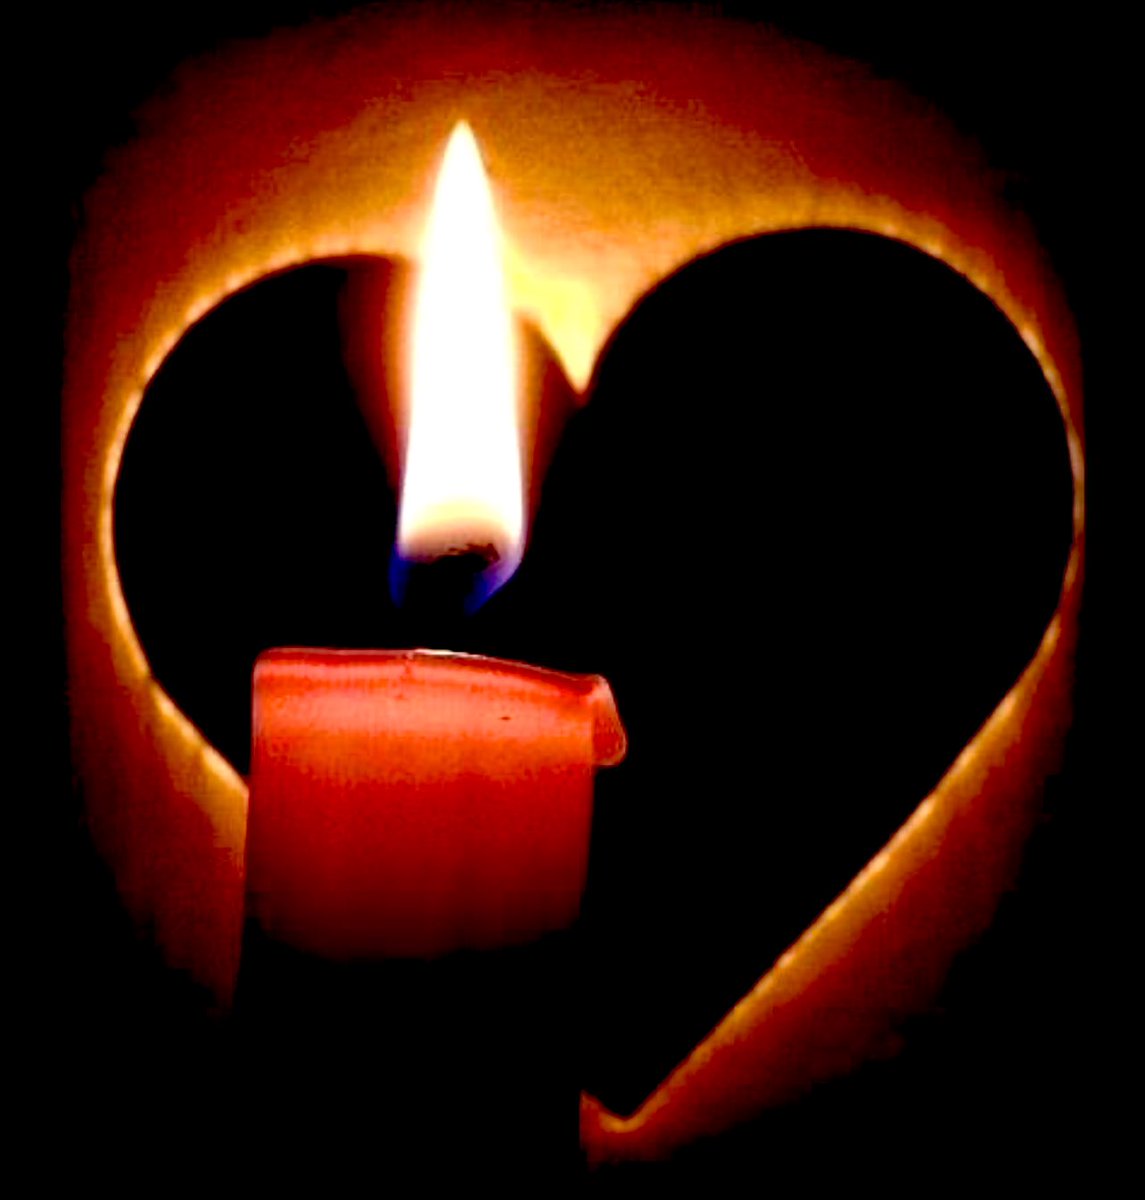 Jusqu'à quand pourrons-nous poursuivre l'illumination de nos bougies de deuil pour nos frères et sœurs, enfants de #GOMA? Agissons.